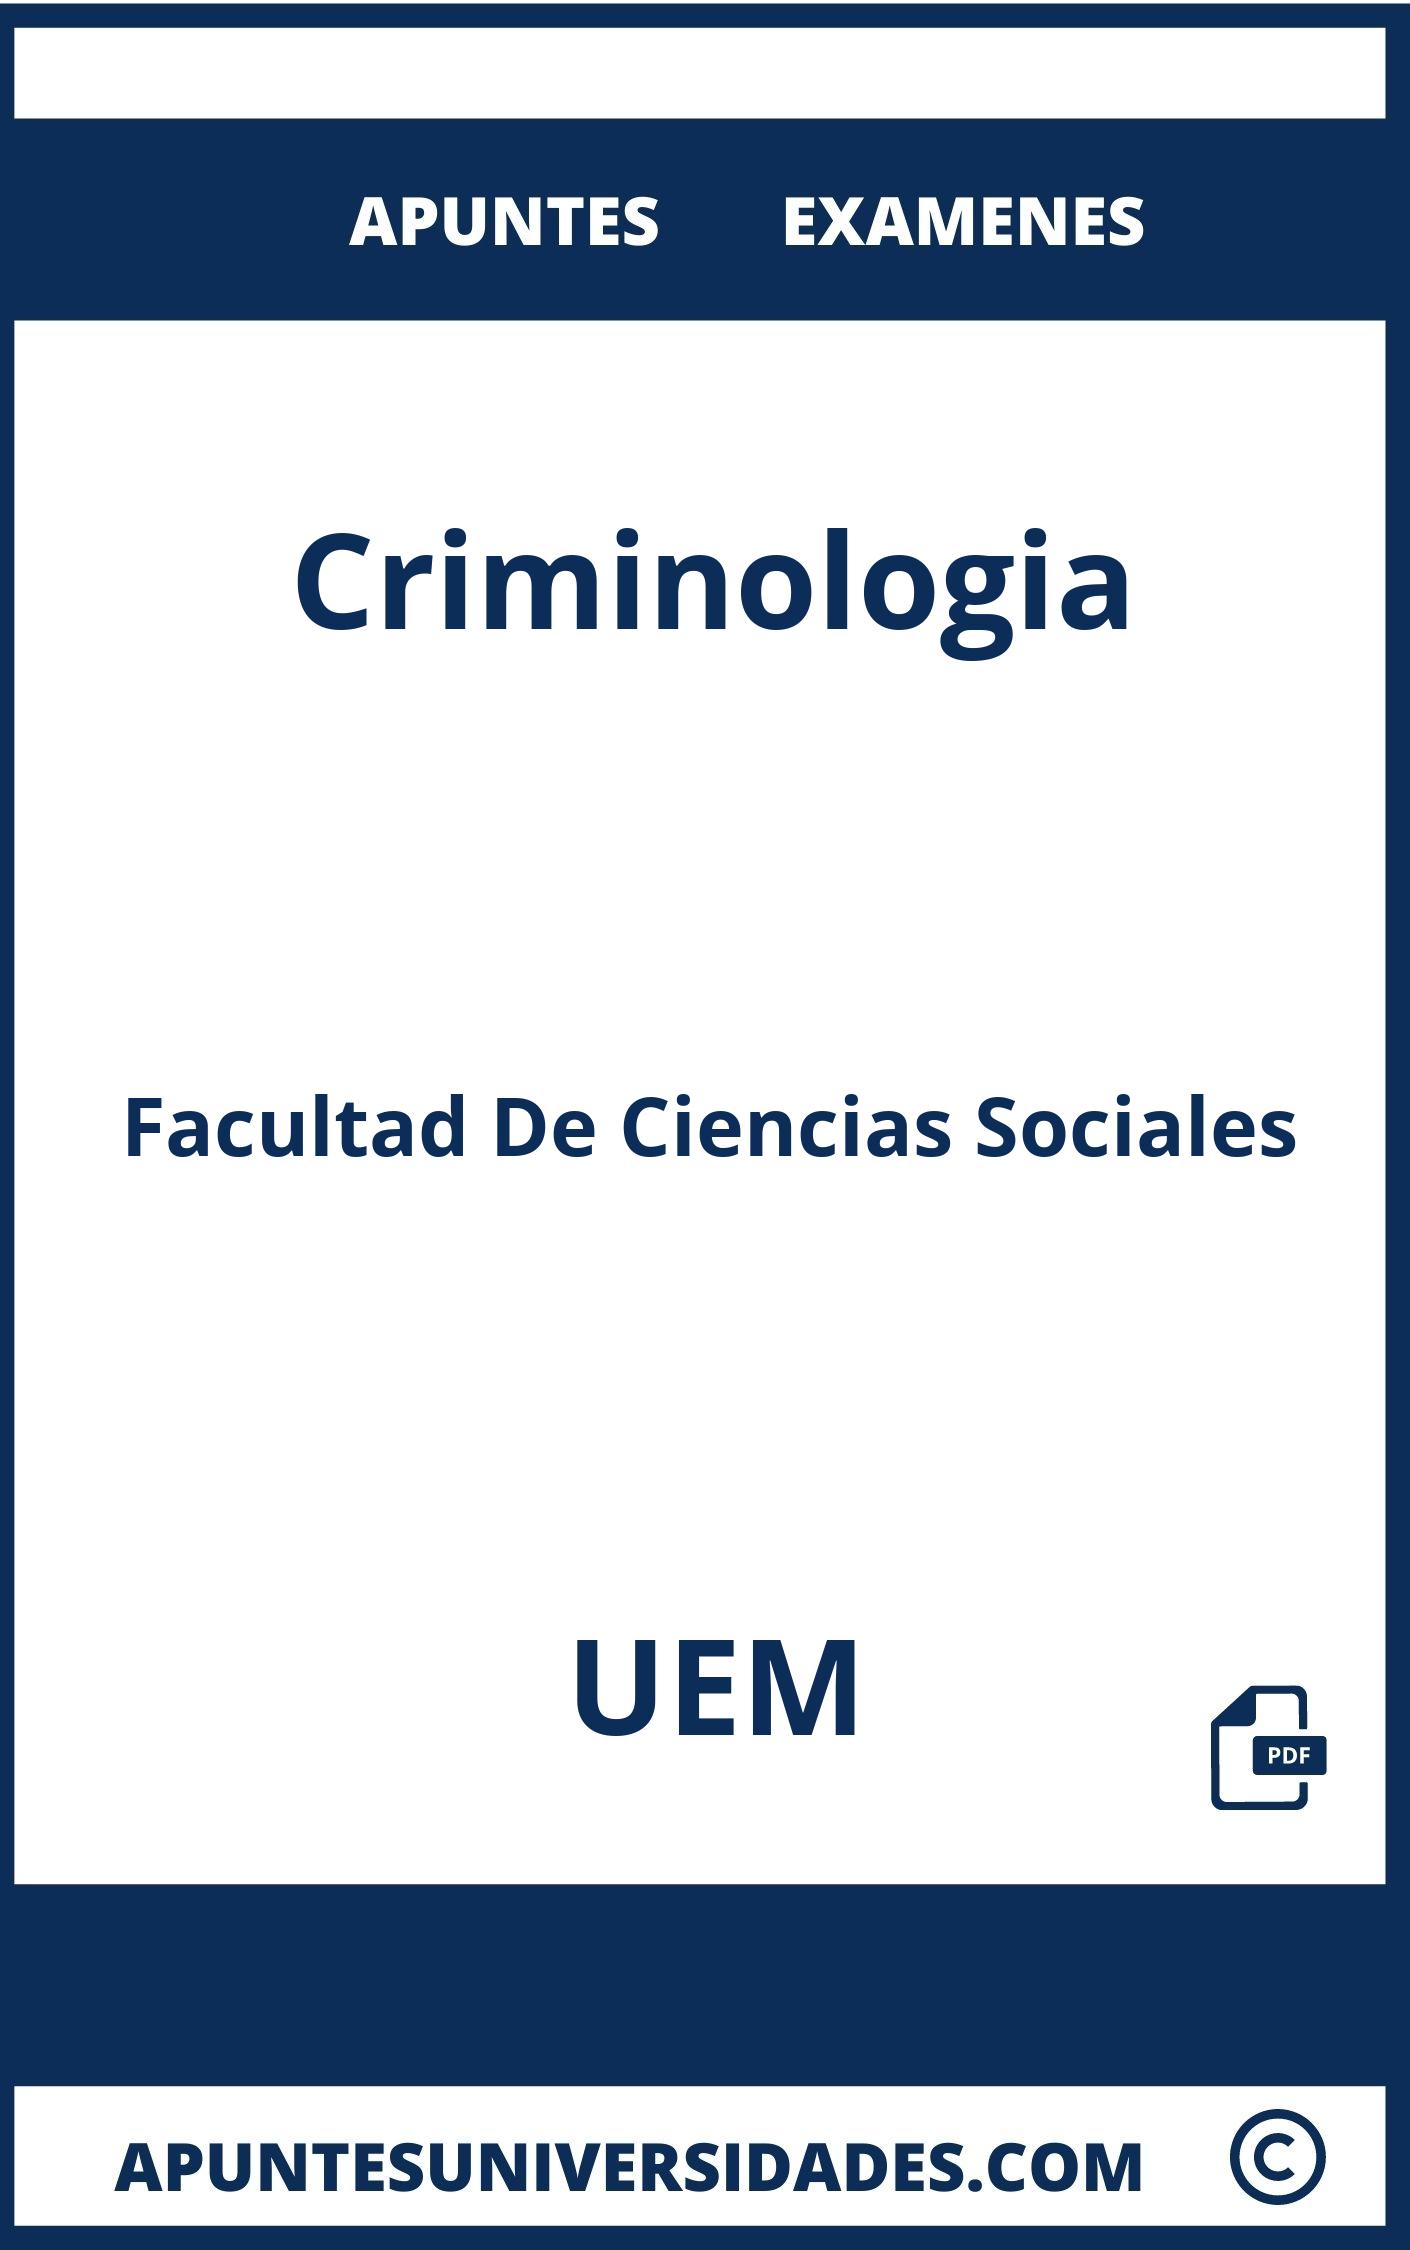 Apuntes y Examenes de Criminologia UEM